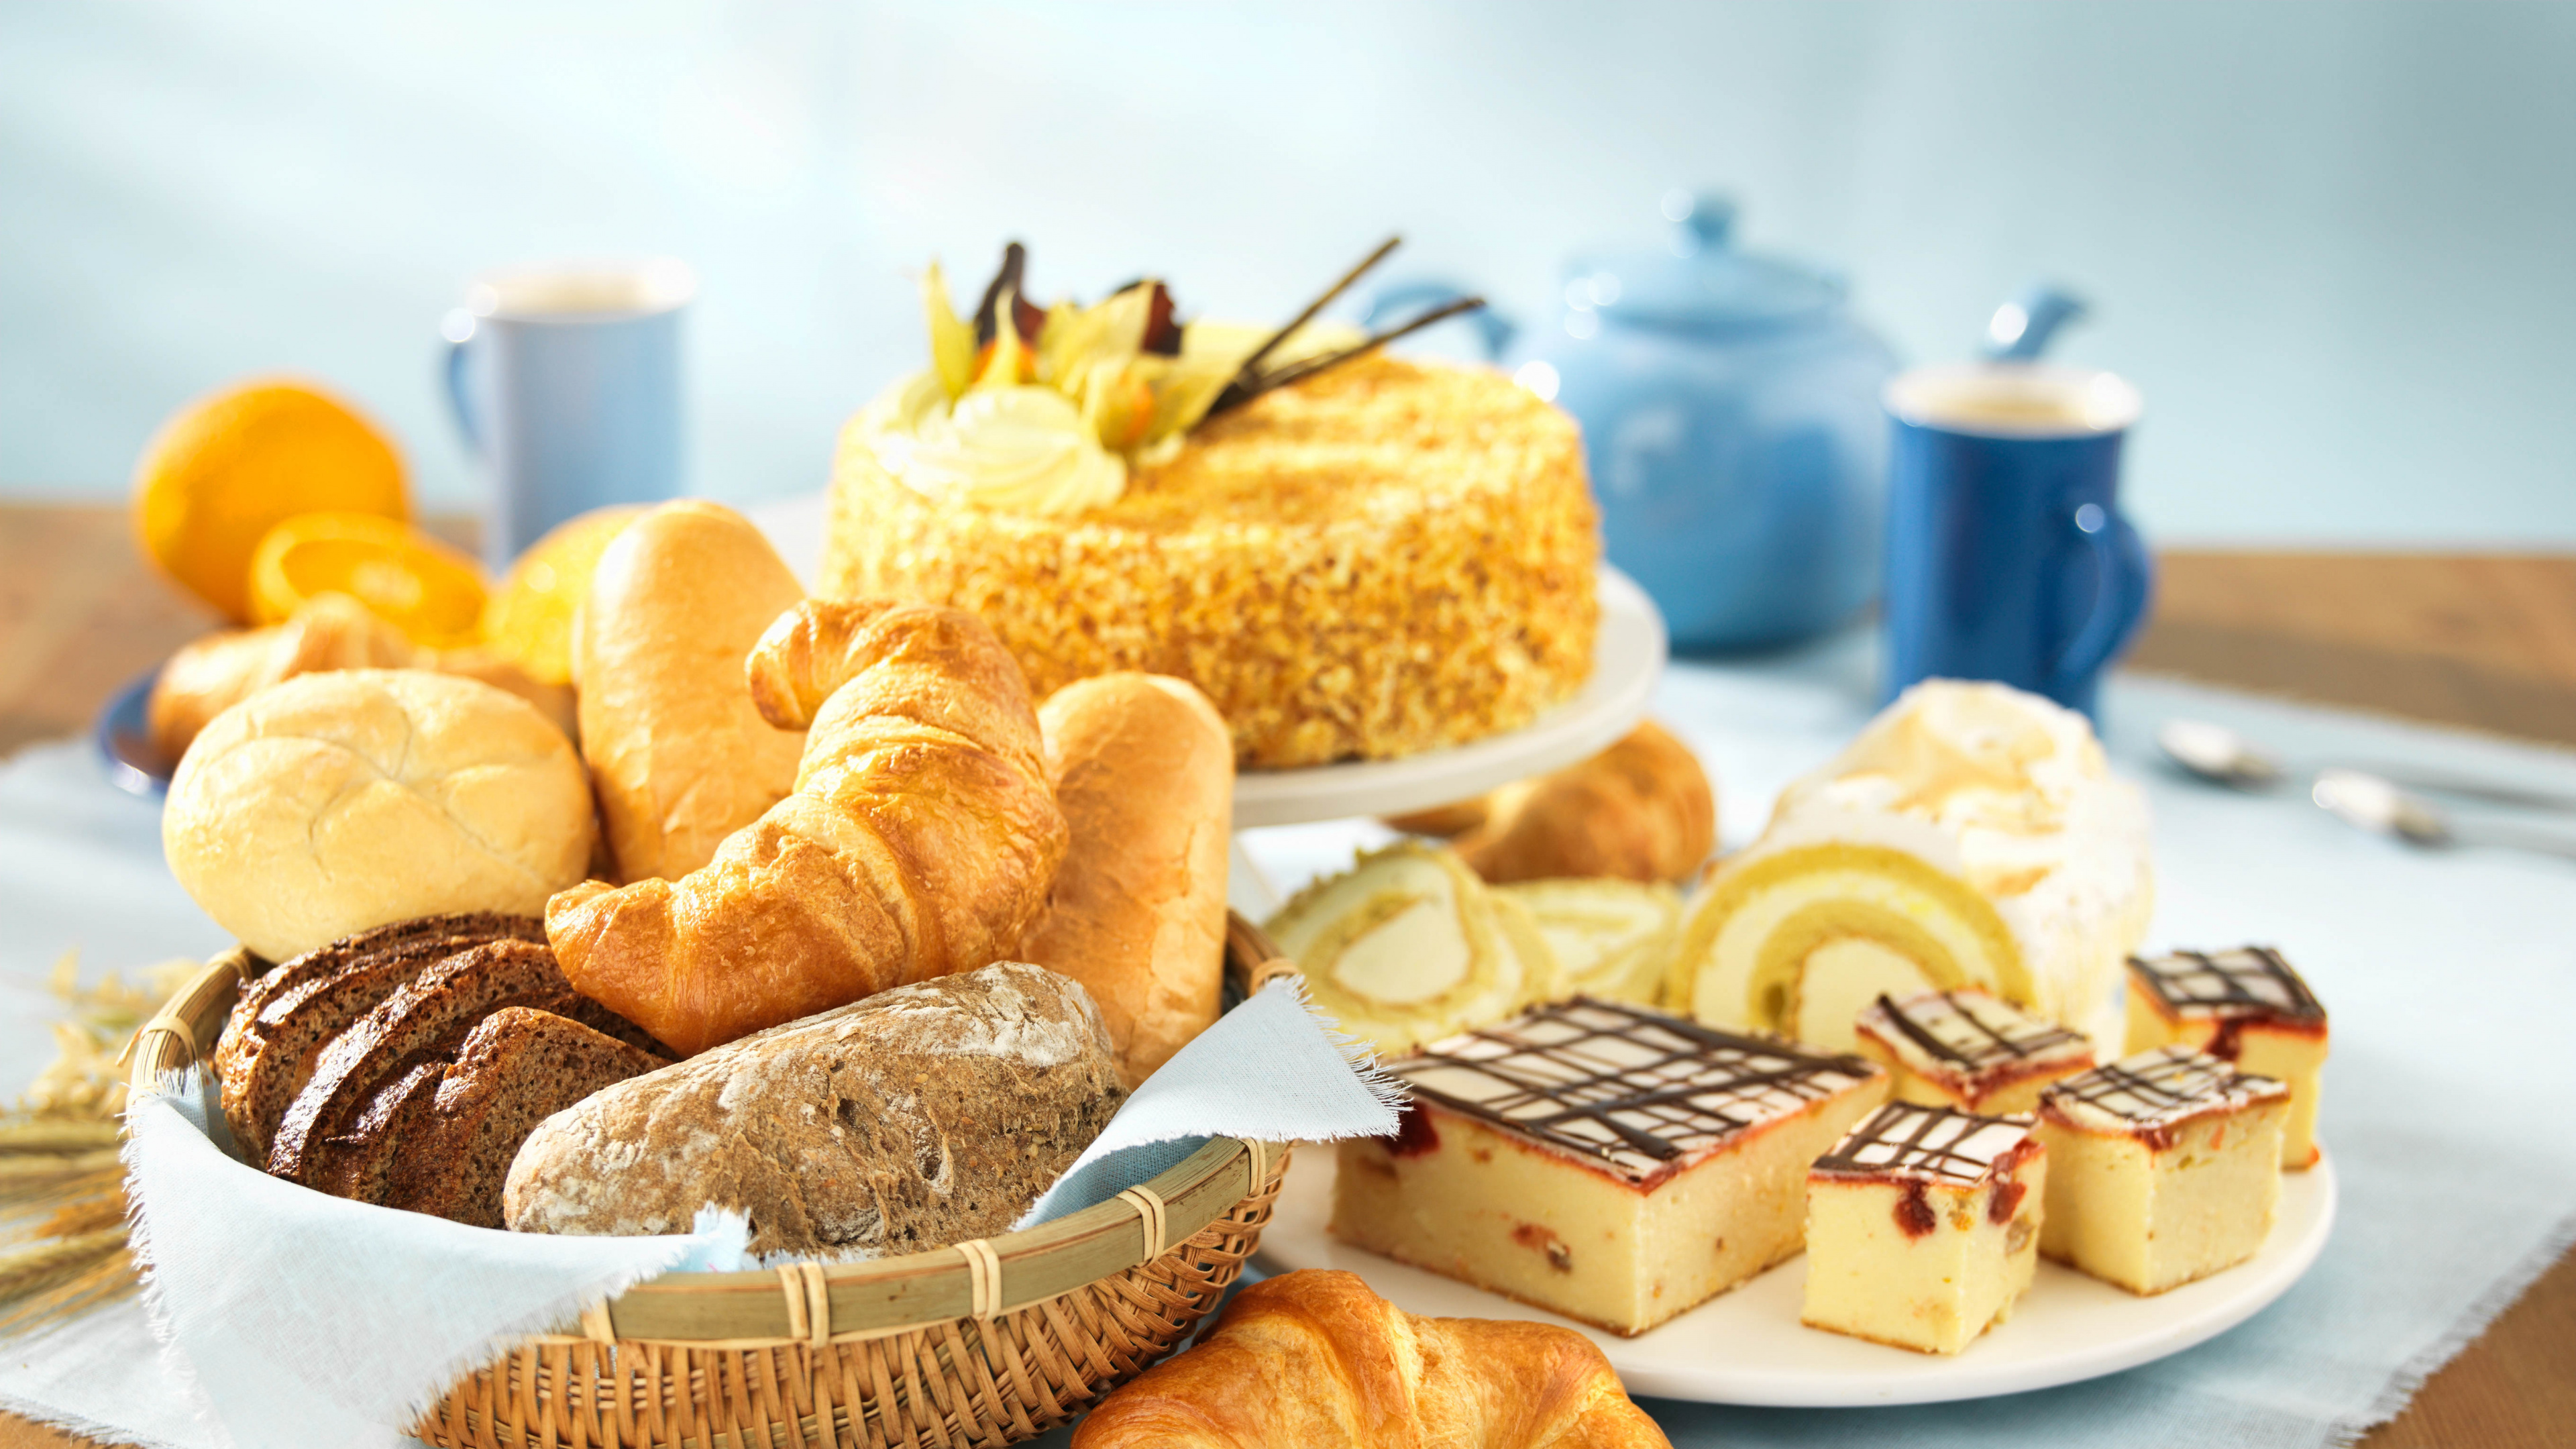 面包店, 牛角面包, 甜点, 糕点, 烘烤 壁纸 3840x2160 允许